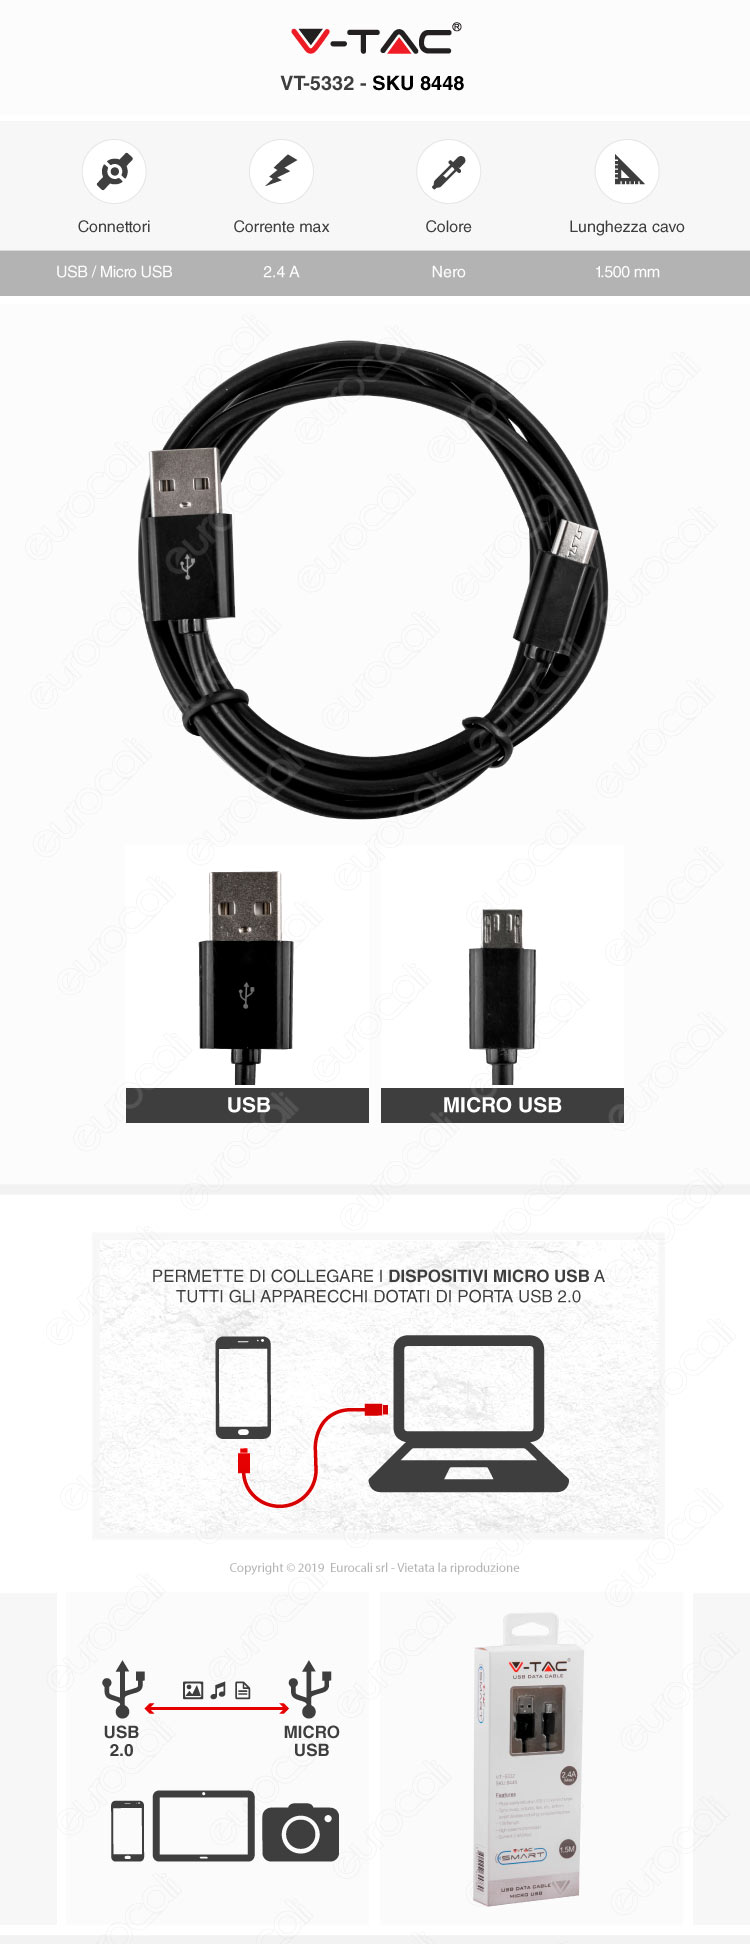 V-Tac VT-5332 USB Data Cable Micro USB Cavo Colore Nero 1,5m 